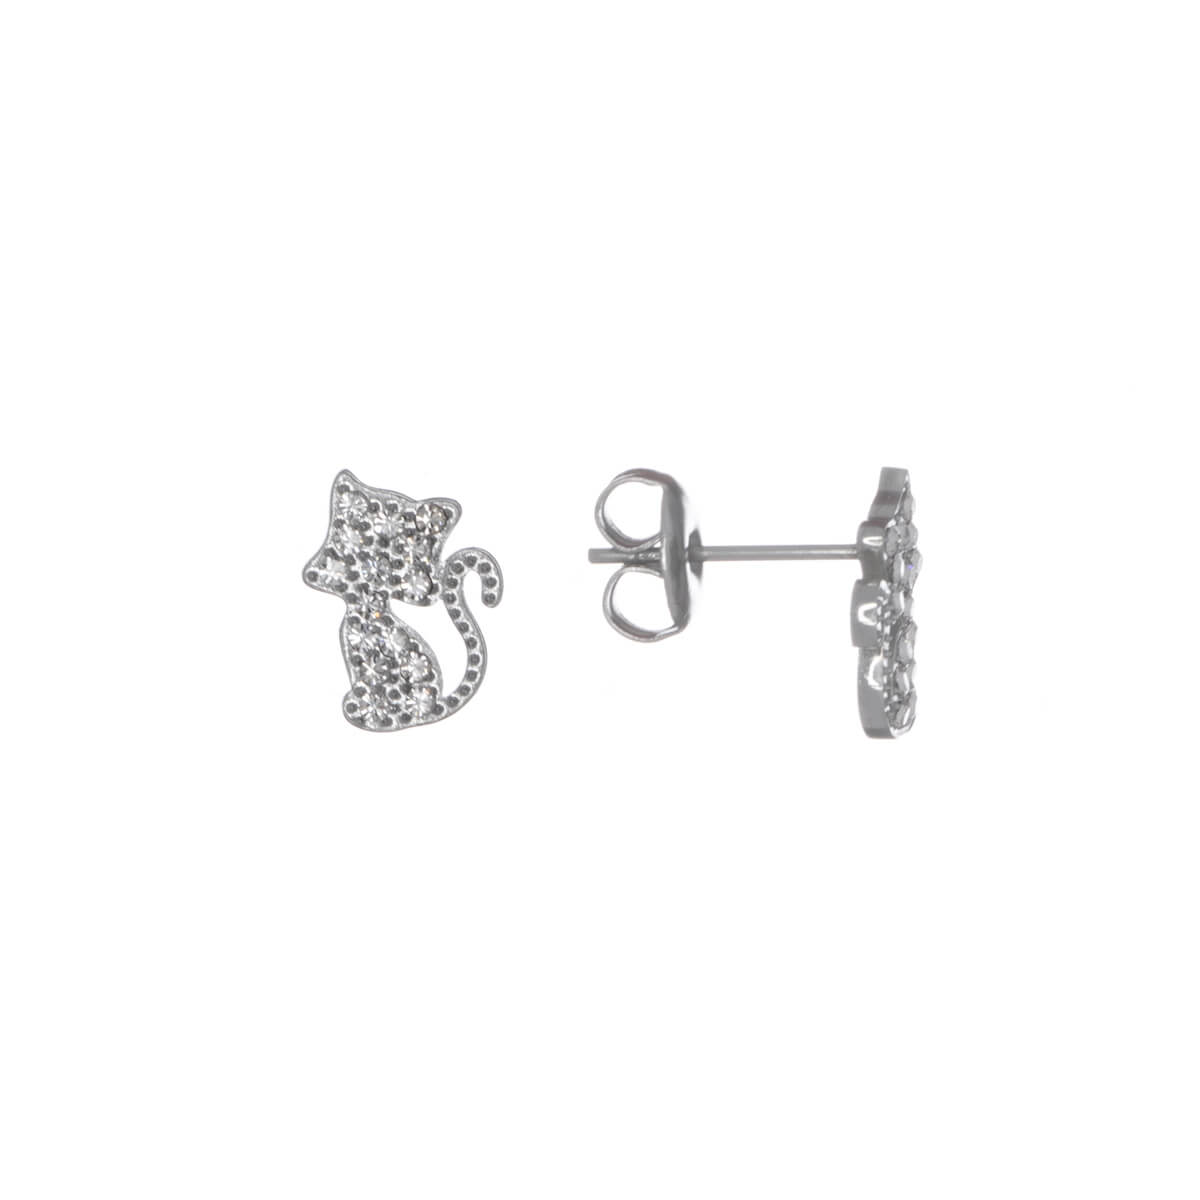 Artificial diamond cat earrings (steel 316L)